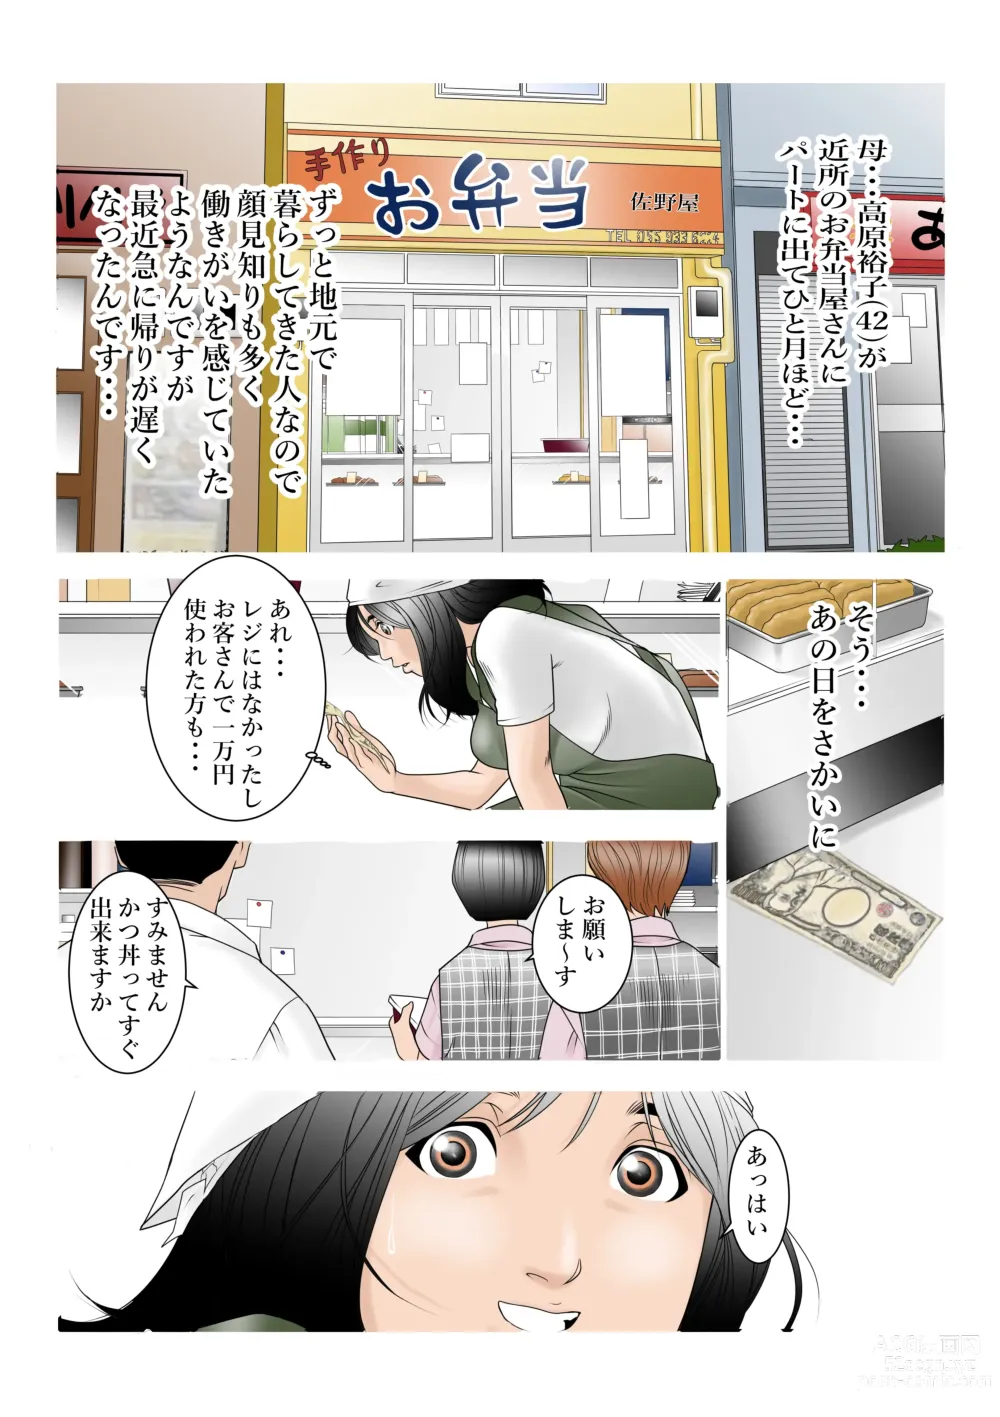 Page 2 of doujinshi Chikaku no Obentoya-san ni Part ni Deta Haha Takahara Yuuko (42) ga Aru Hi o Sakai ni Kaeri ga Osoku Natta ndesu